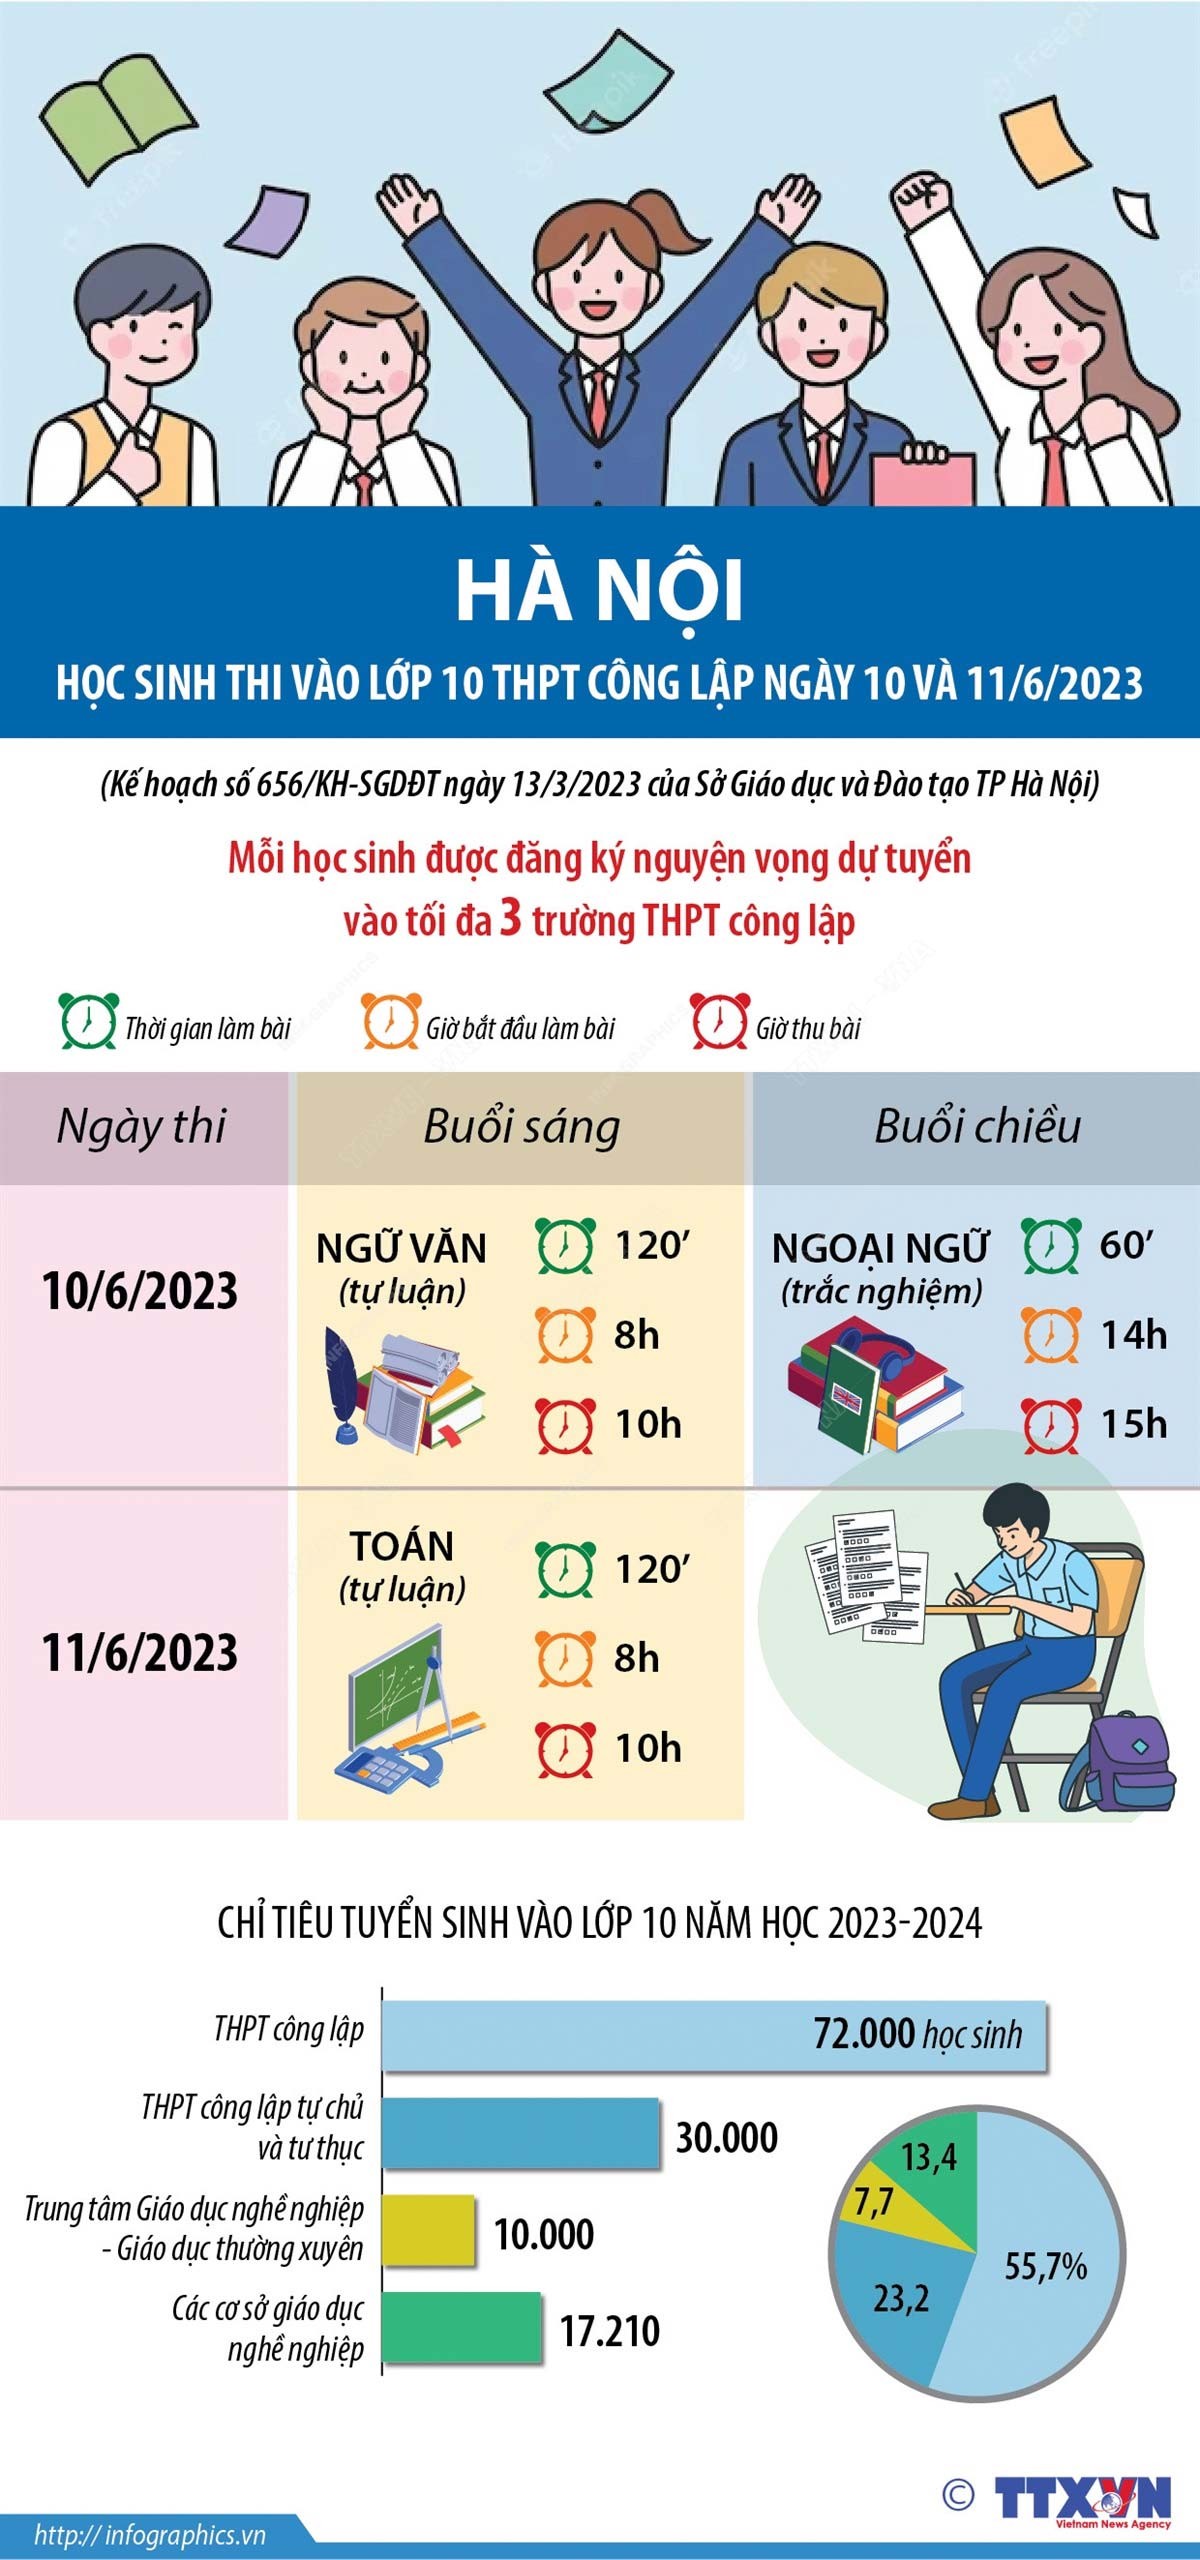 Điều cần biết về lịch thi vào lớp 10 THPT công lập năm học 2023-2024 tại Hà Nội